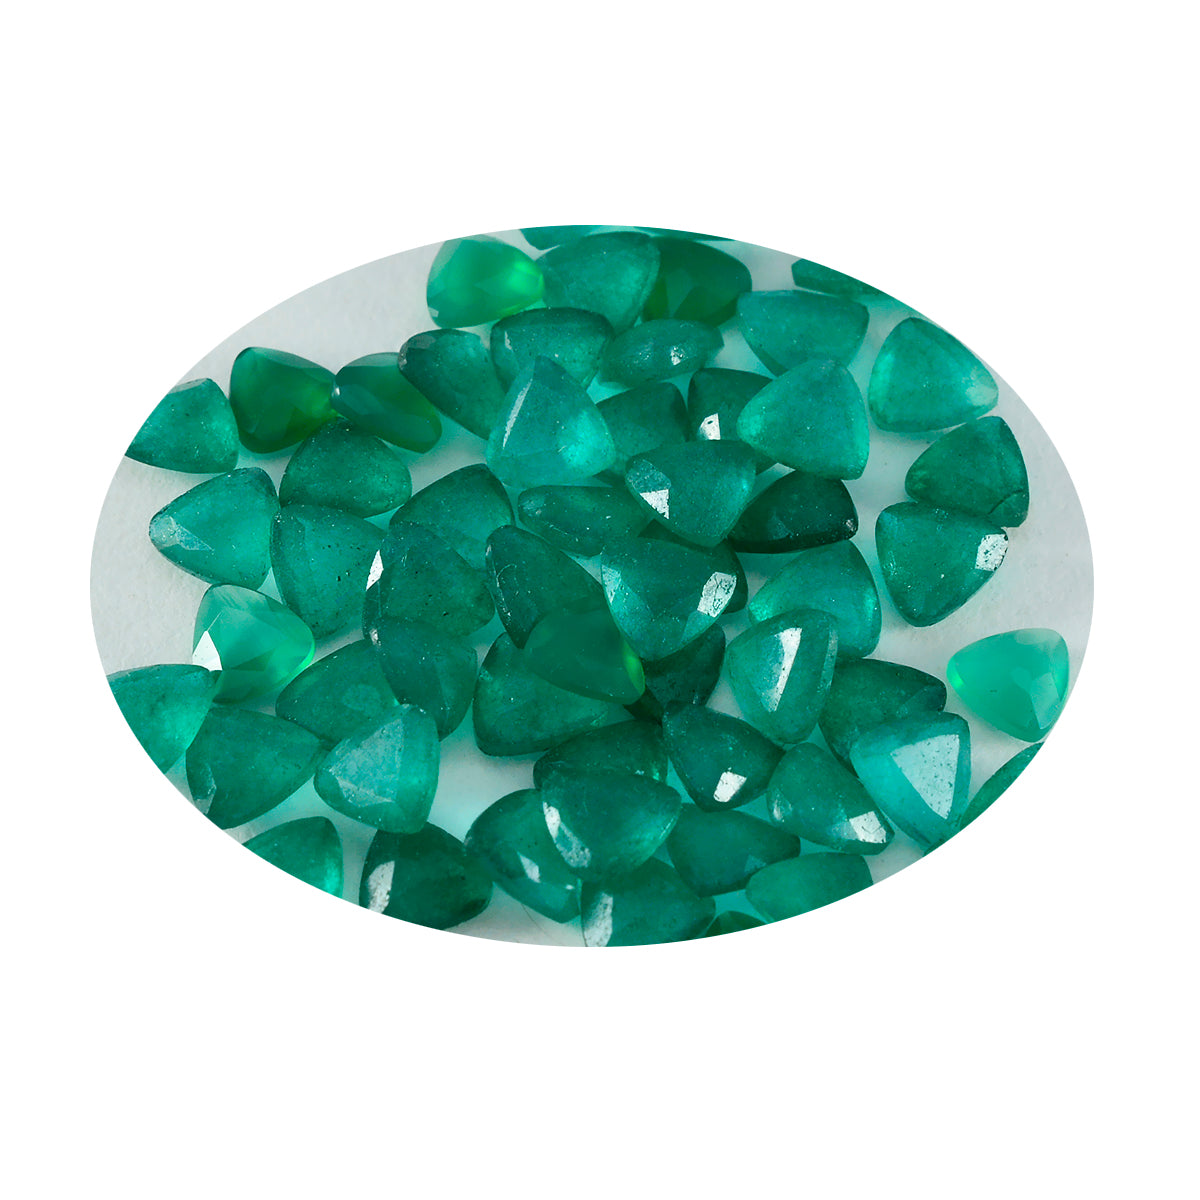 riyogems 1 шт., натуральная зеленая яшма, ограненная 7x7 мм, форма триллиона, хорошее качество, свободные драгоценные камни